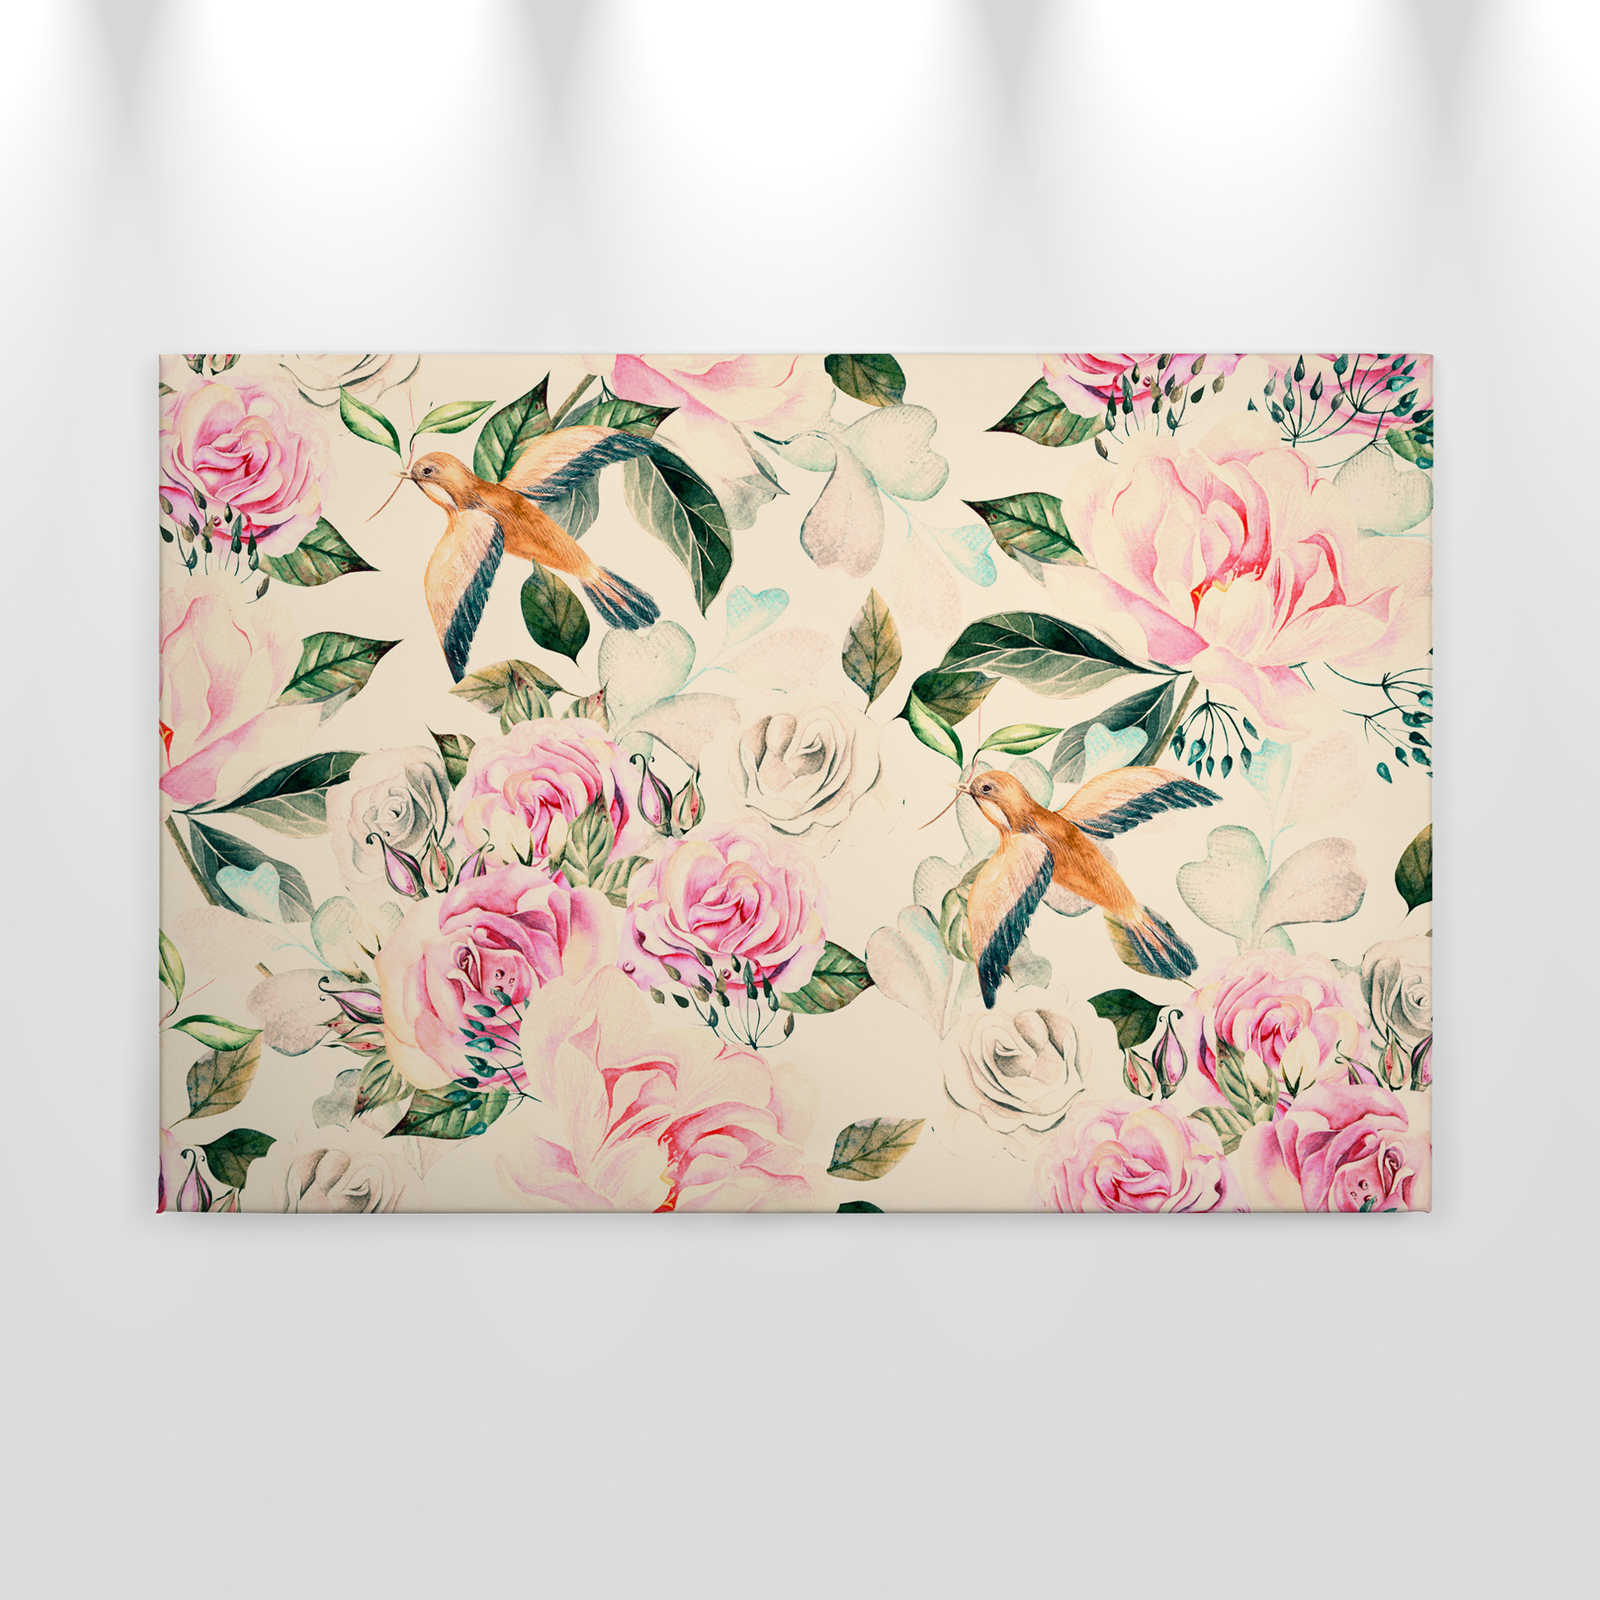             Canvas in vintage stijl met speelse bloemen en vogels - 0,90 m x 0,60 m
        